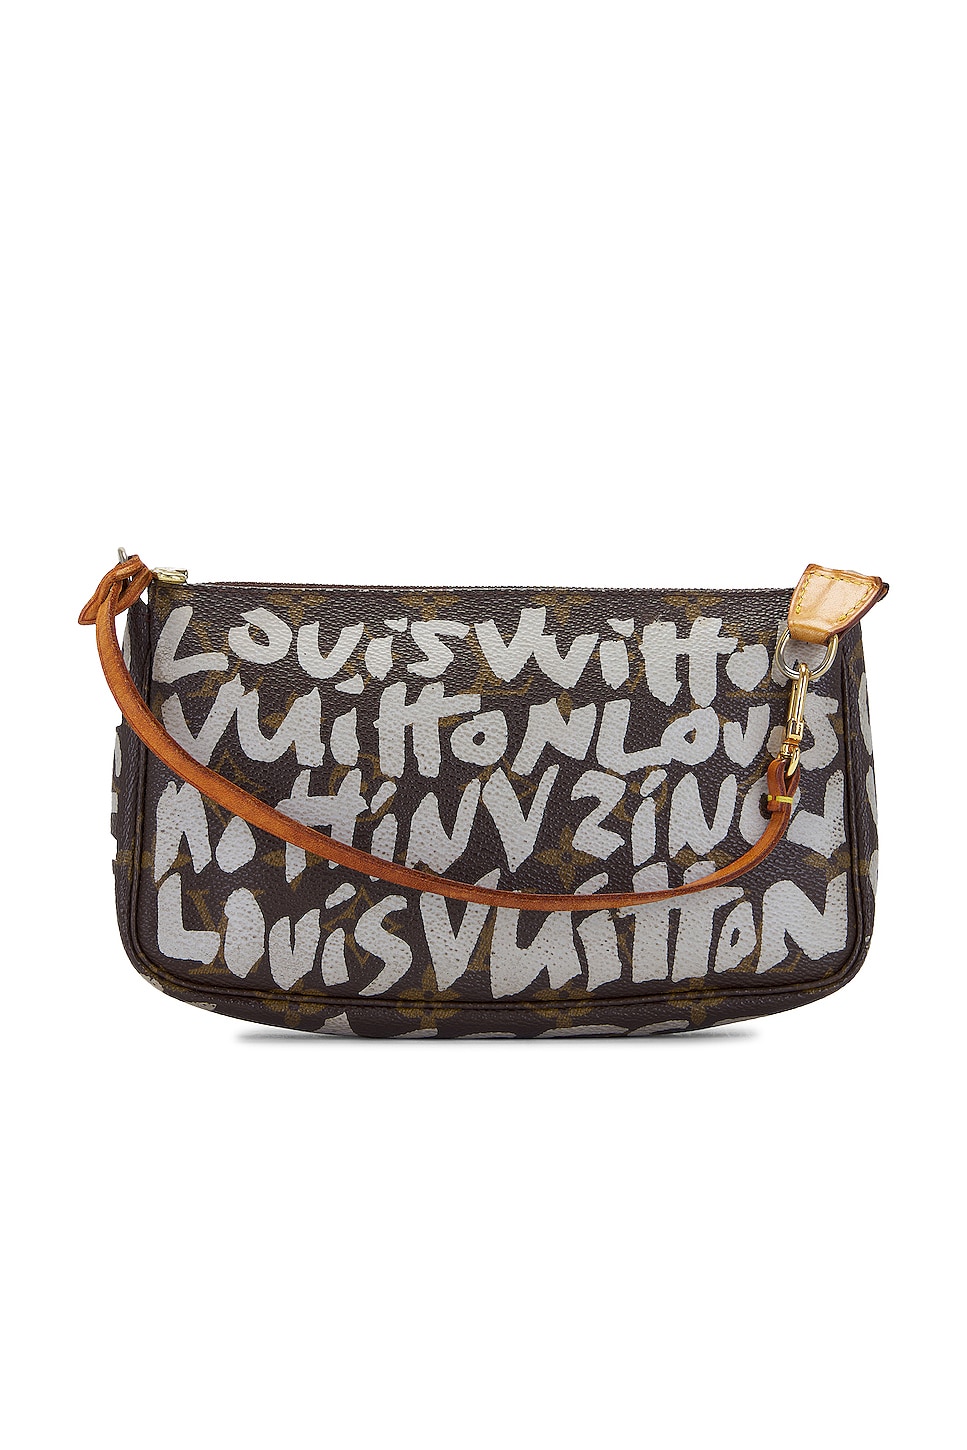 FWRD Renew Louis Vuitton Multi Pochette Accessoires Shoulder Bag